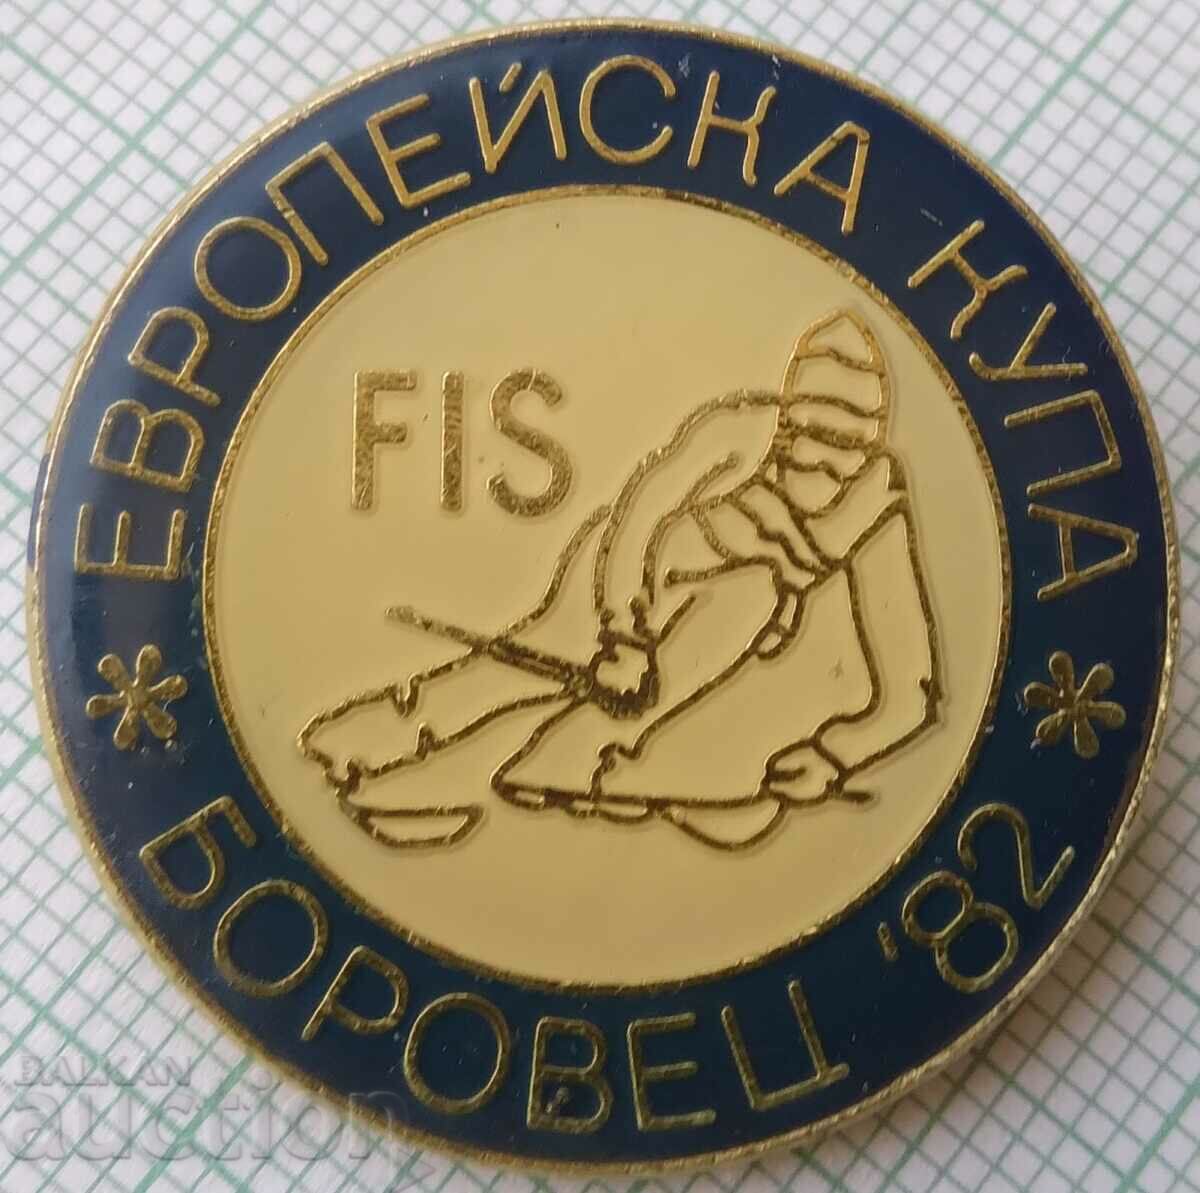 16337 Insigna - Cupa Europeană de Schi Borovets 1982